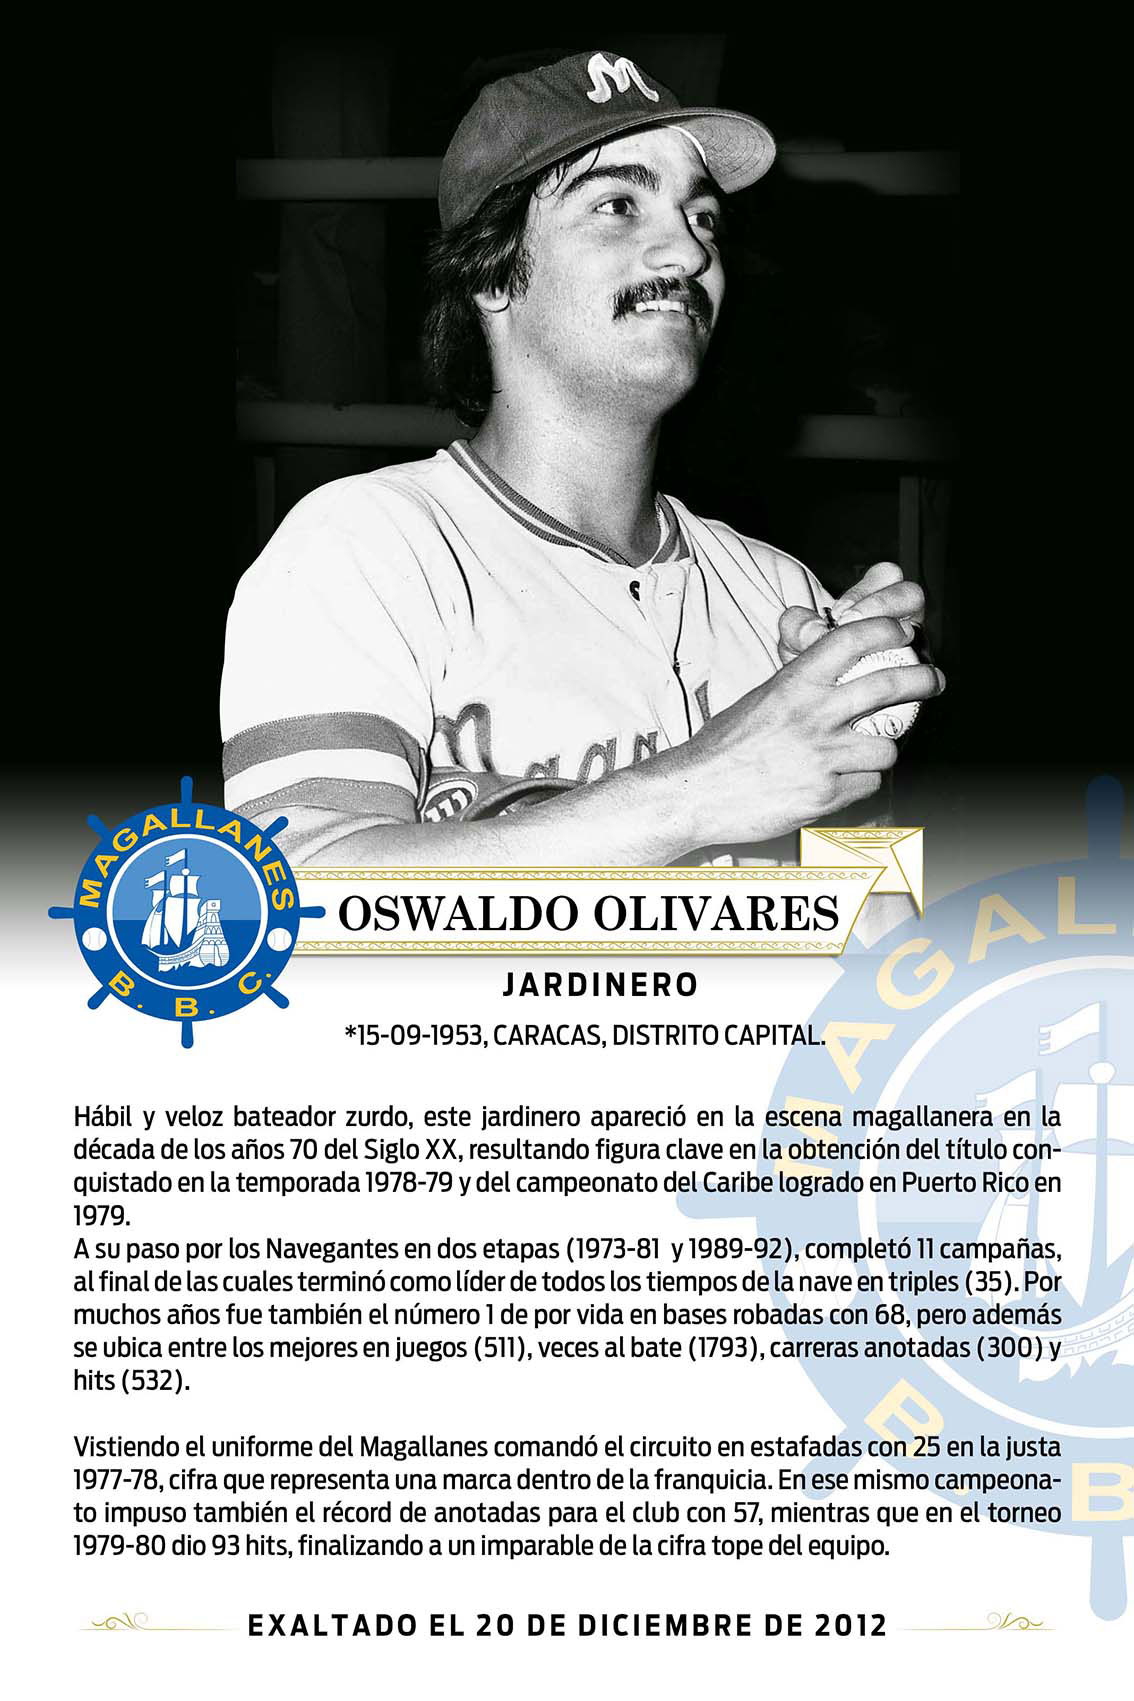 Oswaldo Olivares